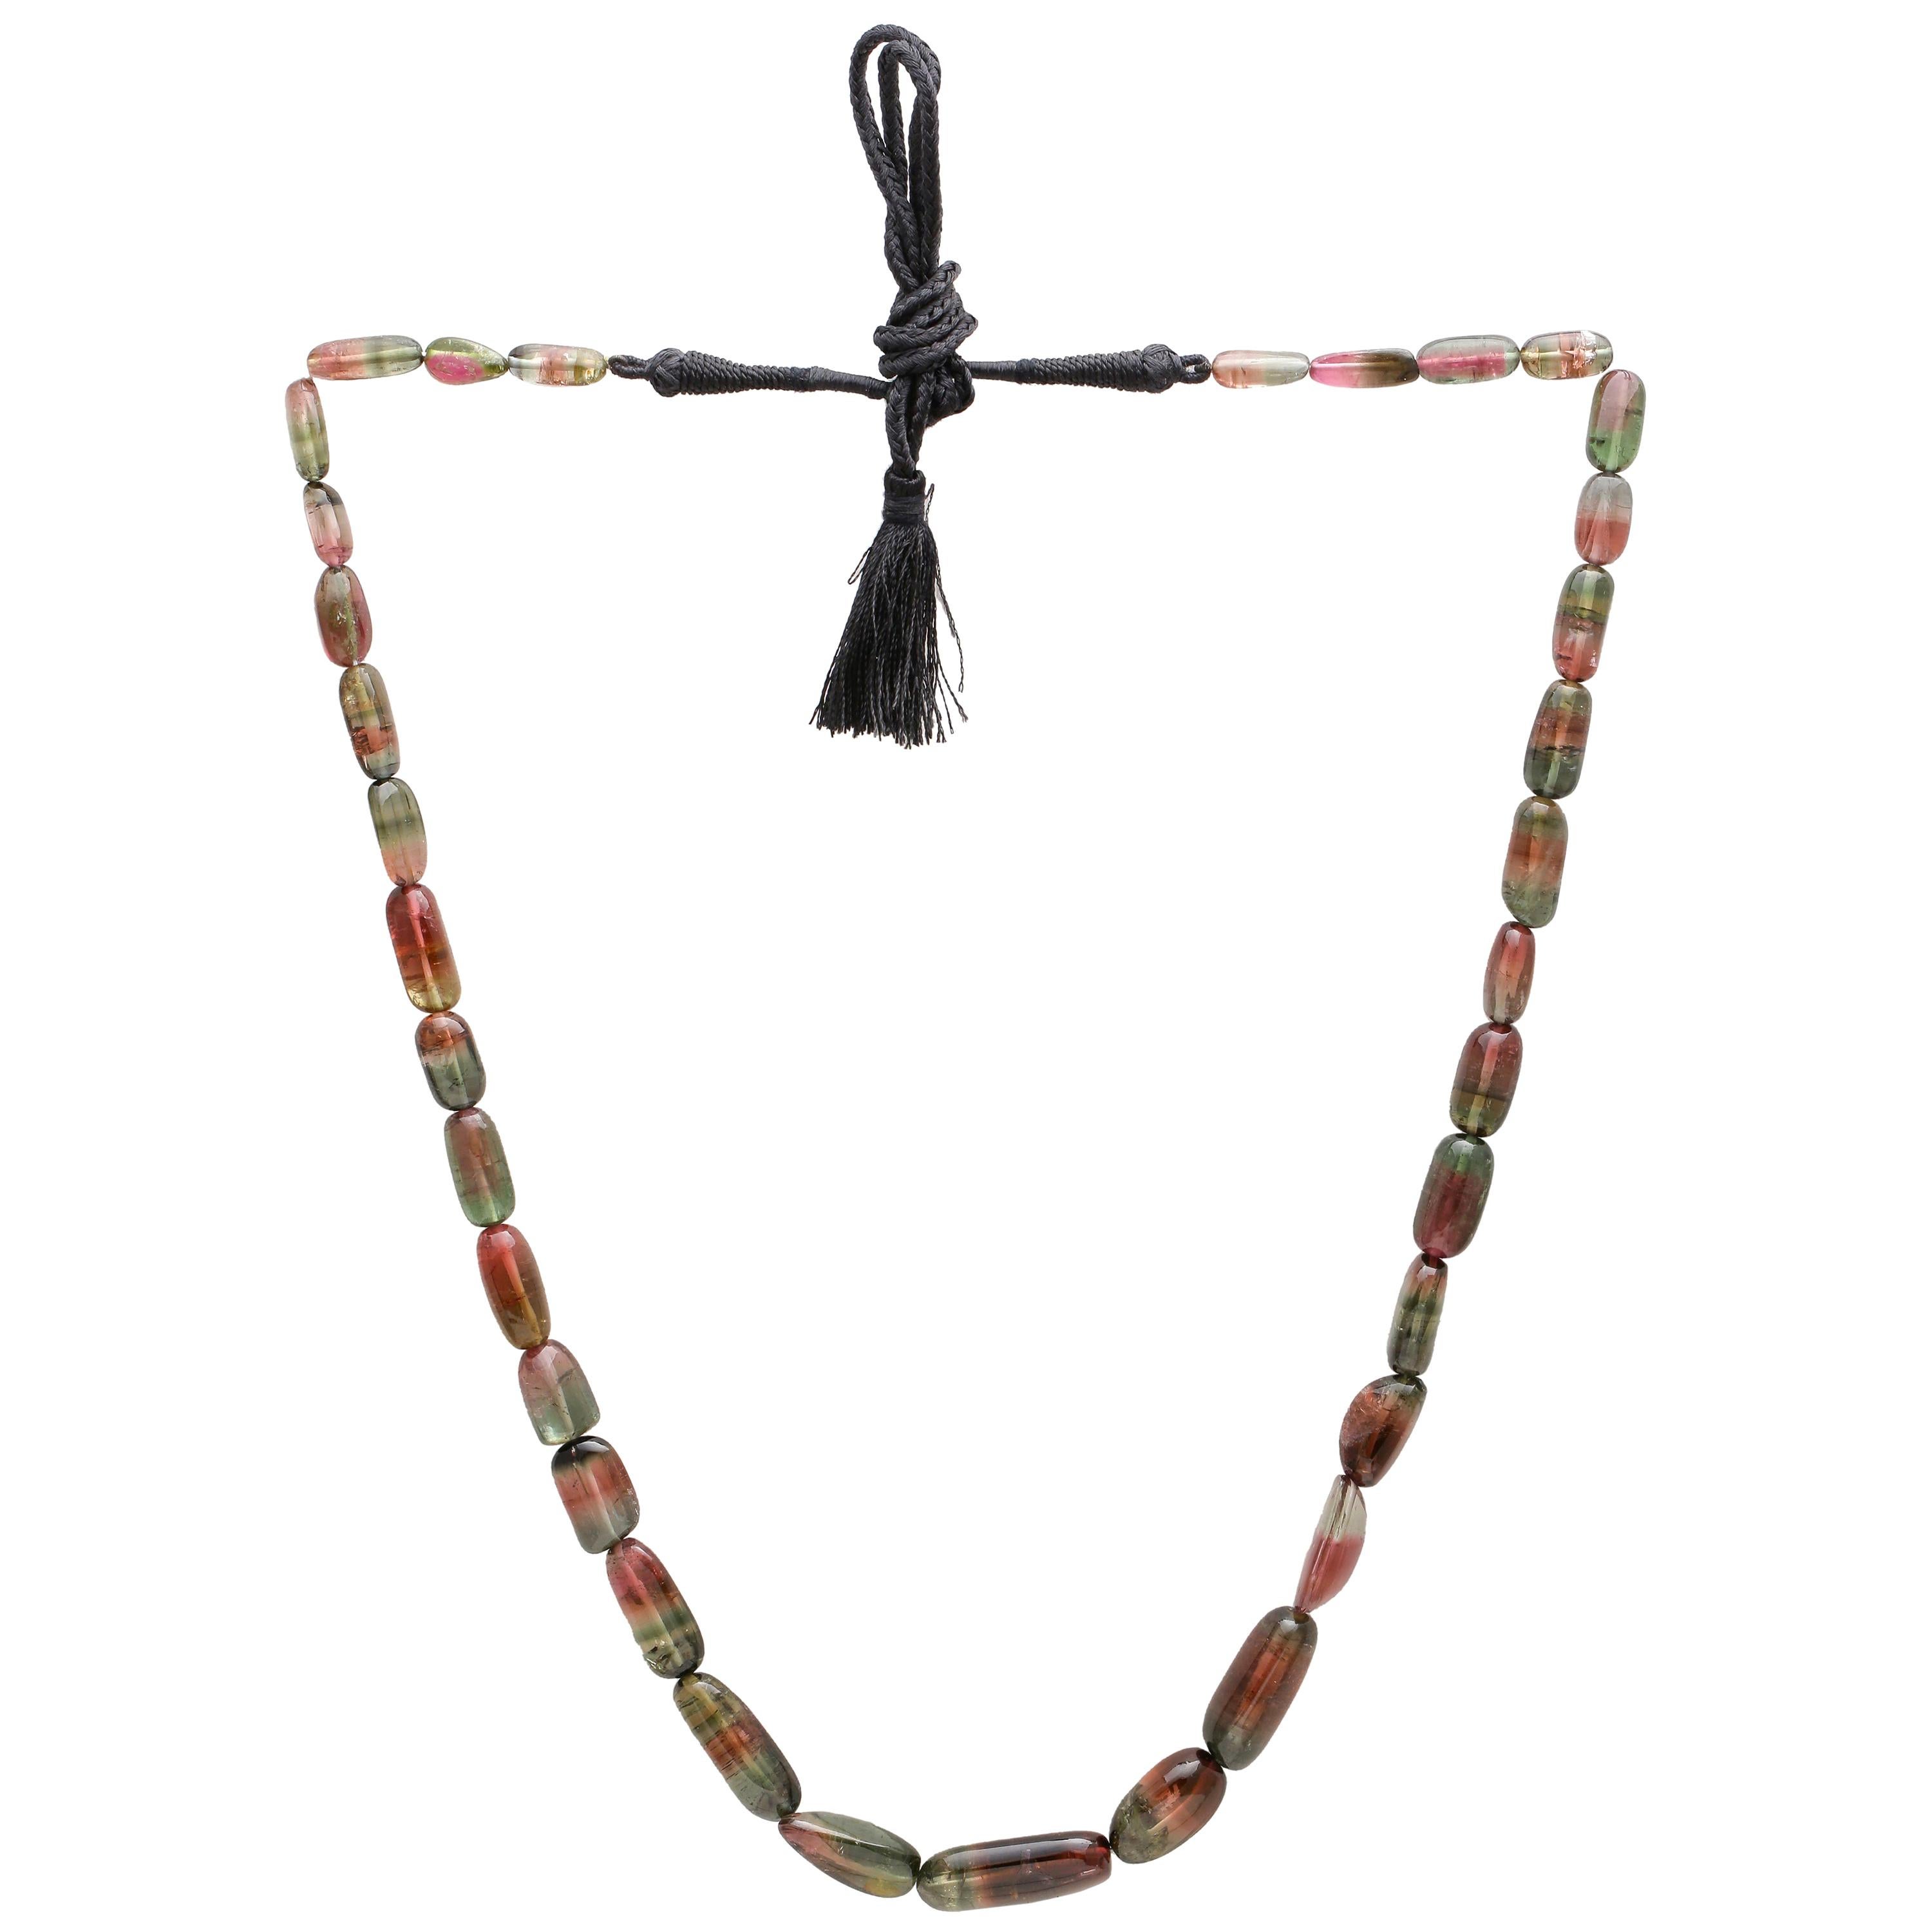 403 Carat Multi-Color Tourmaline Bead Necklace with Silk Thread